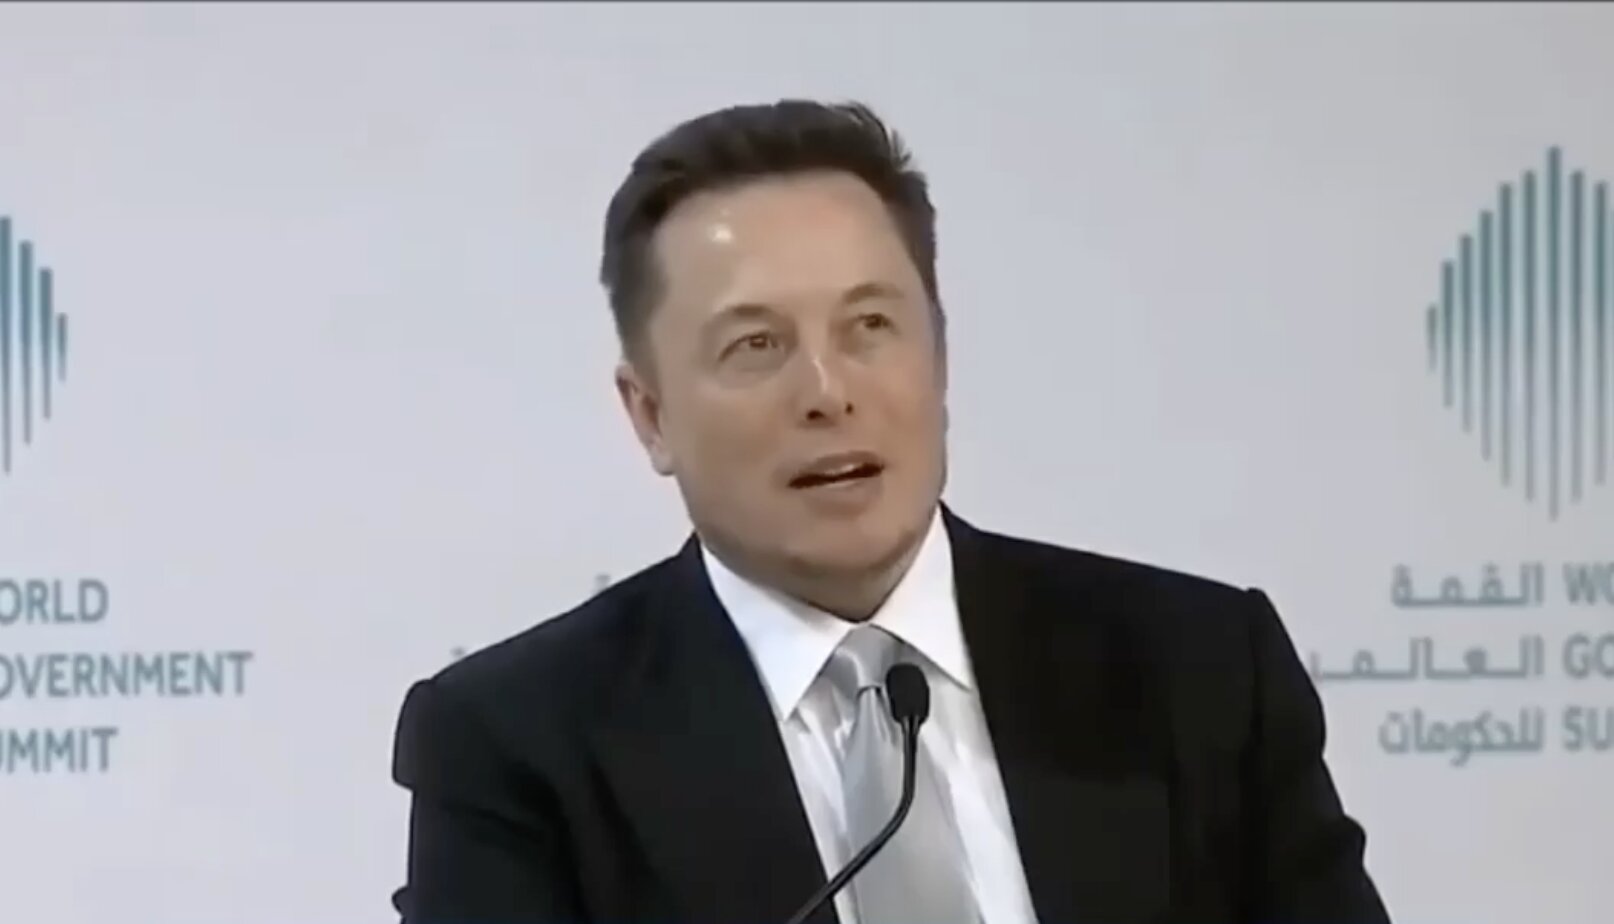 Δείτε έναν απατεώνα-ΣΚΟΥΠΙΔΙ – Elon Musk: Ελάχιστο εγγυημένο εισόδημα σε όλους τους ανθρώπους